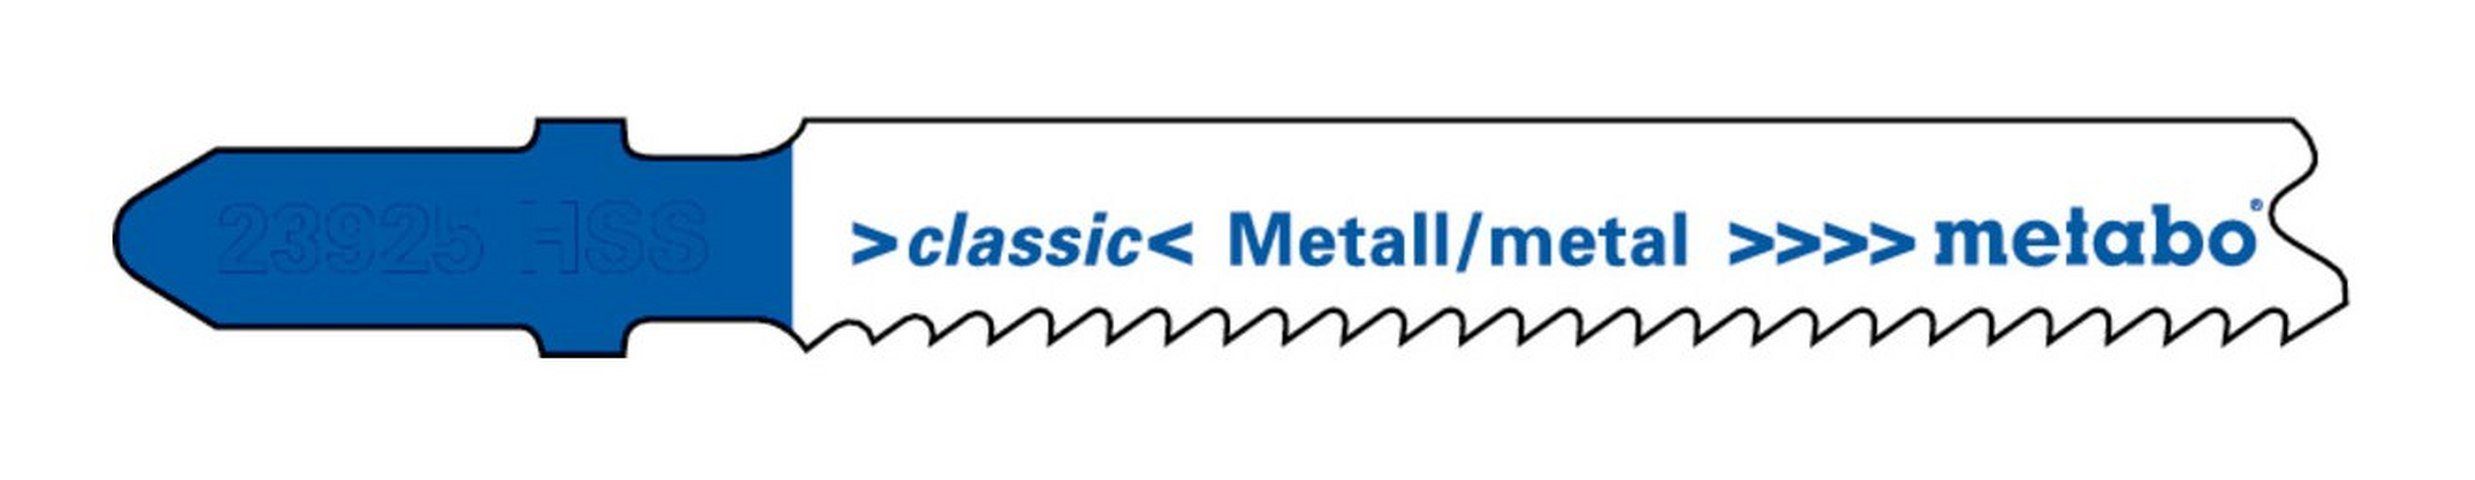 metabo Stichsägeblatt (5 Stück), Metall Serie classic 66 / 1,9-2,3 mm progressiv HSS mit Eintauchspitze